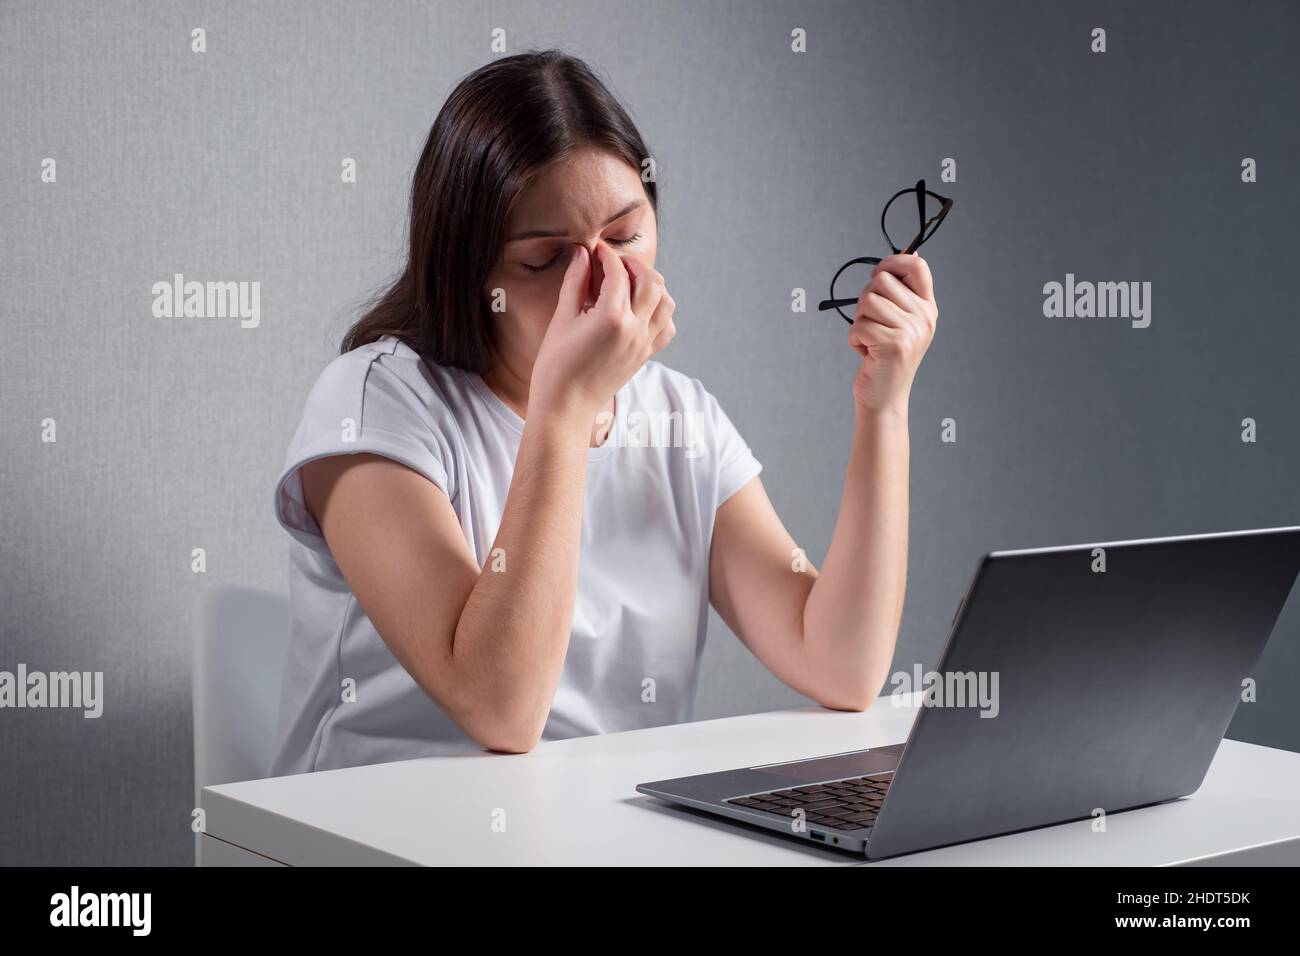 mujer joven masajeando el puente de la nariz, sosteniendo las gafas en otra mano, sentada delante de un ordenador portátil Foto de stock